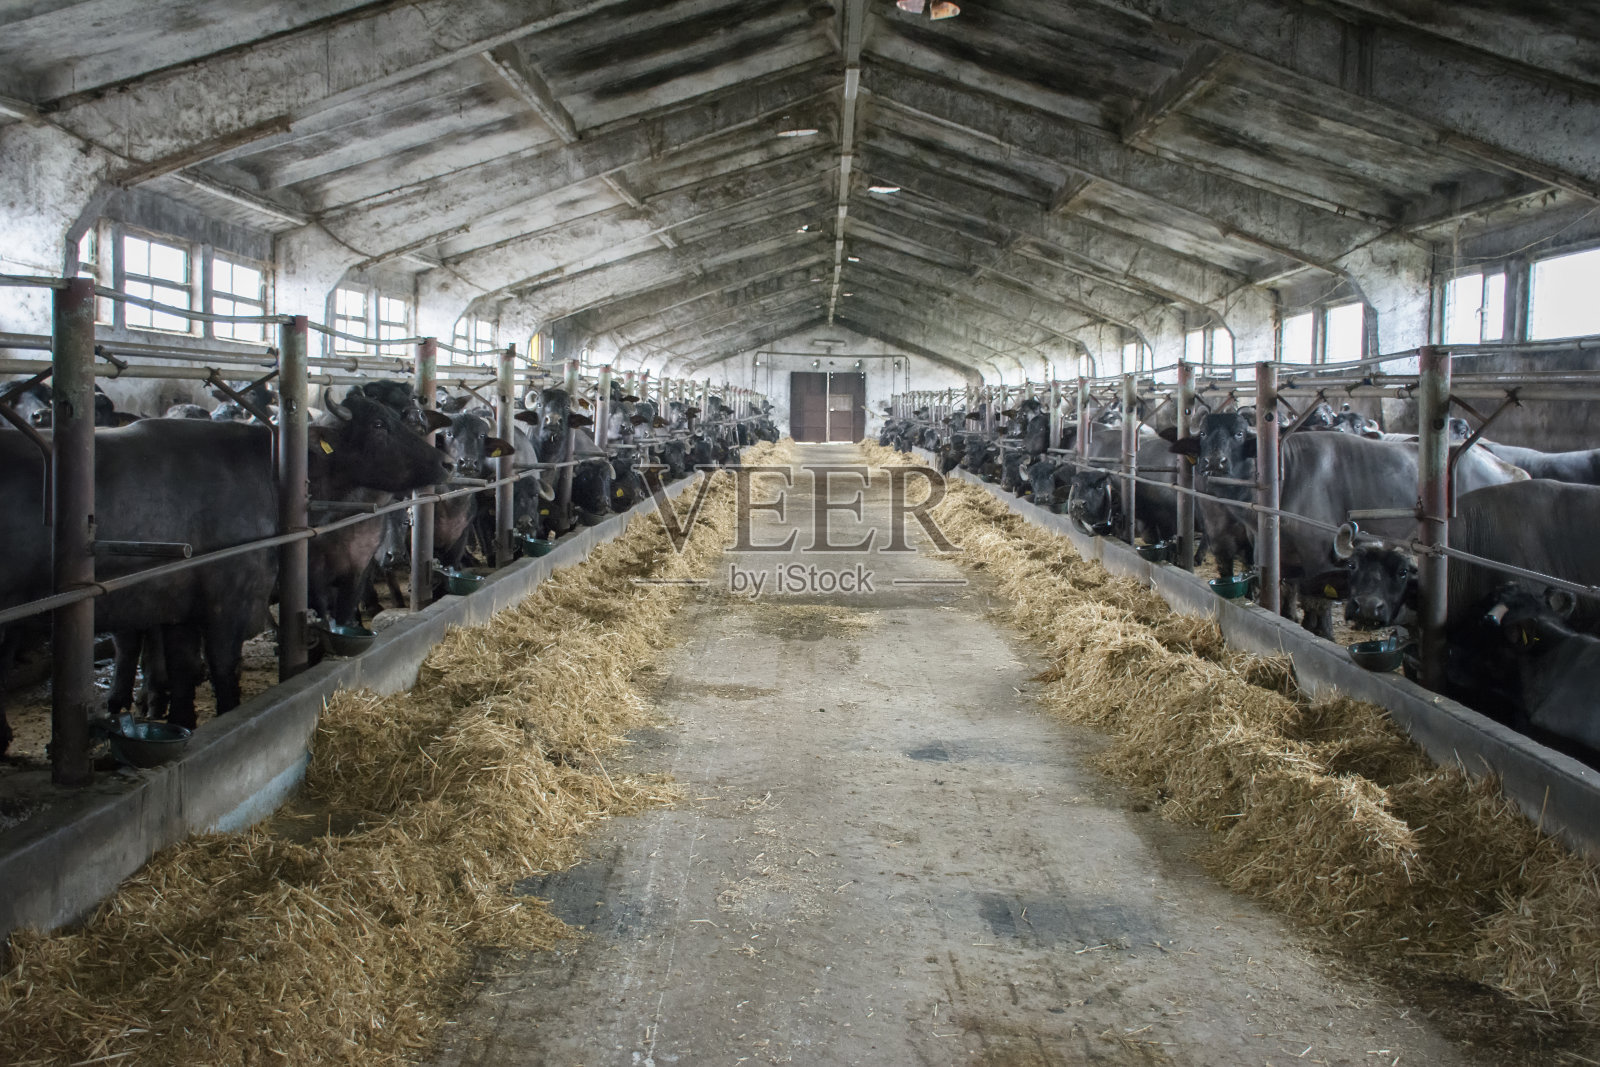 农场中大量生产牛奶的水牛。吃谷仓照片摄影图片